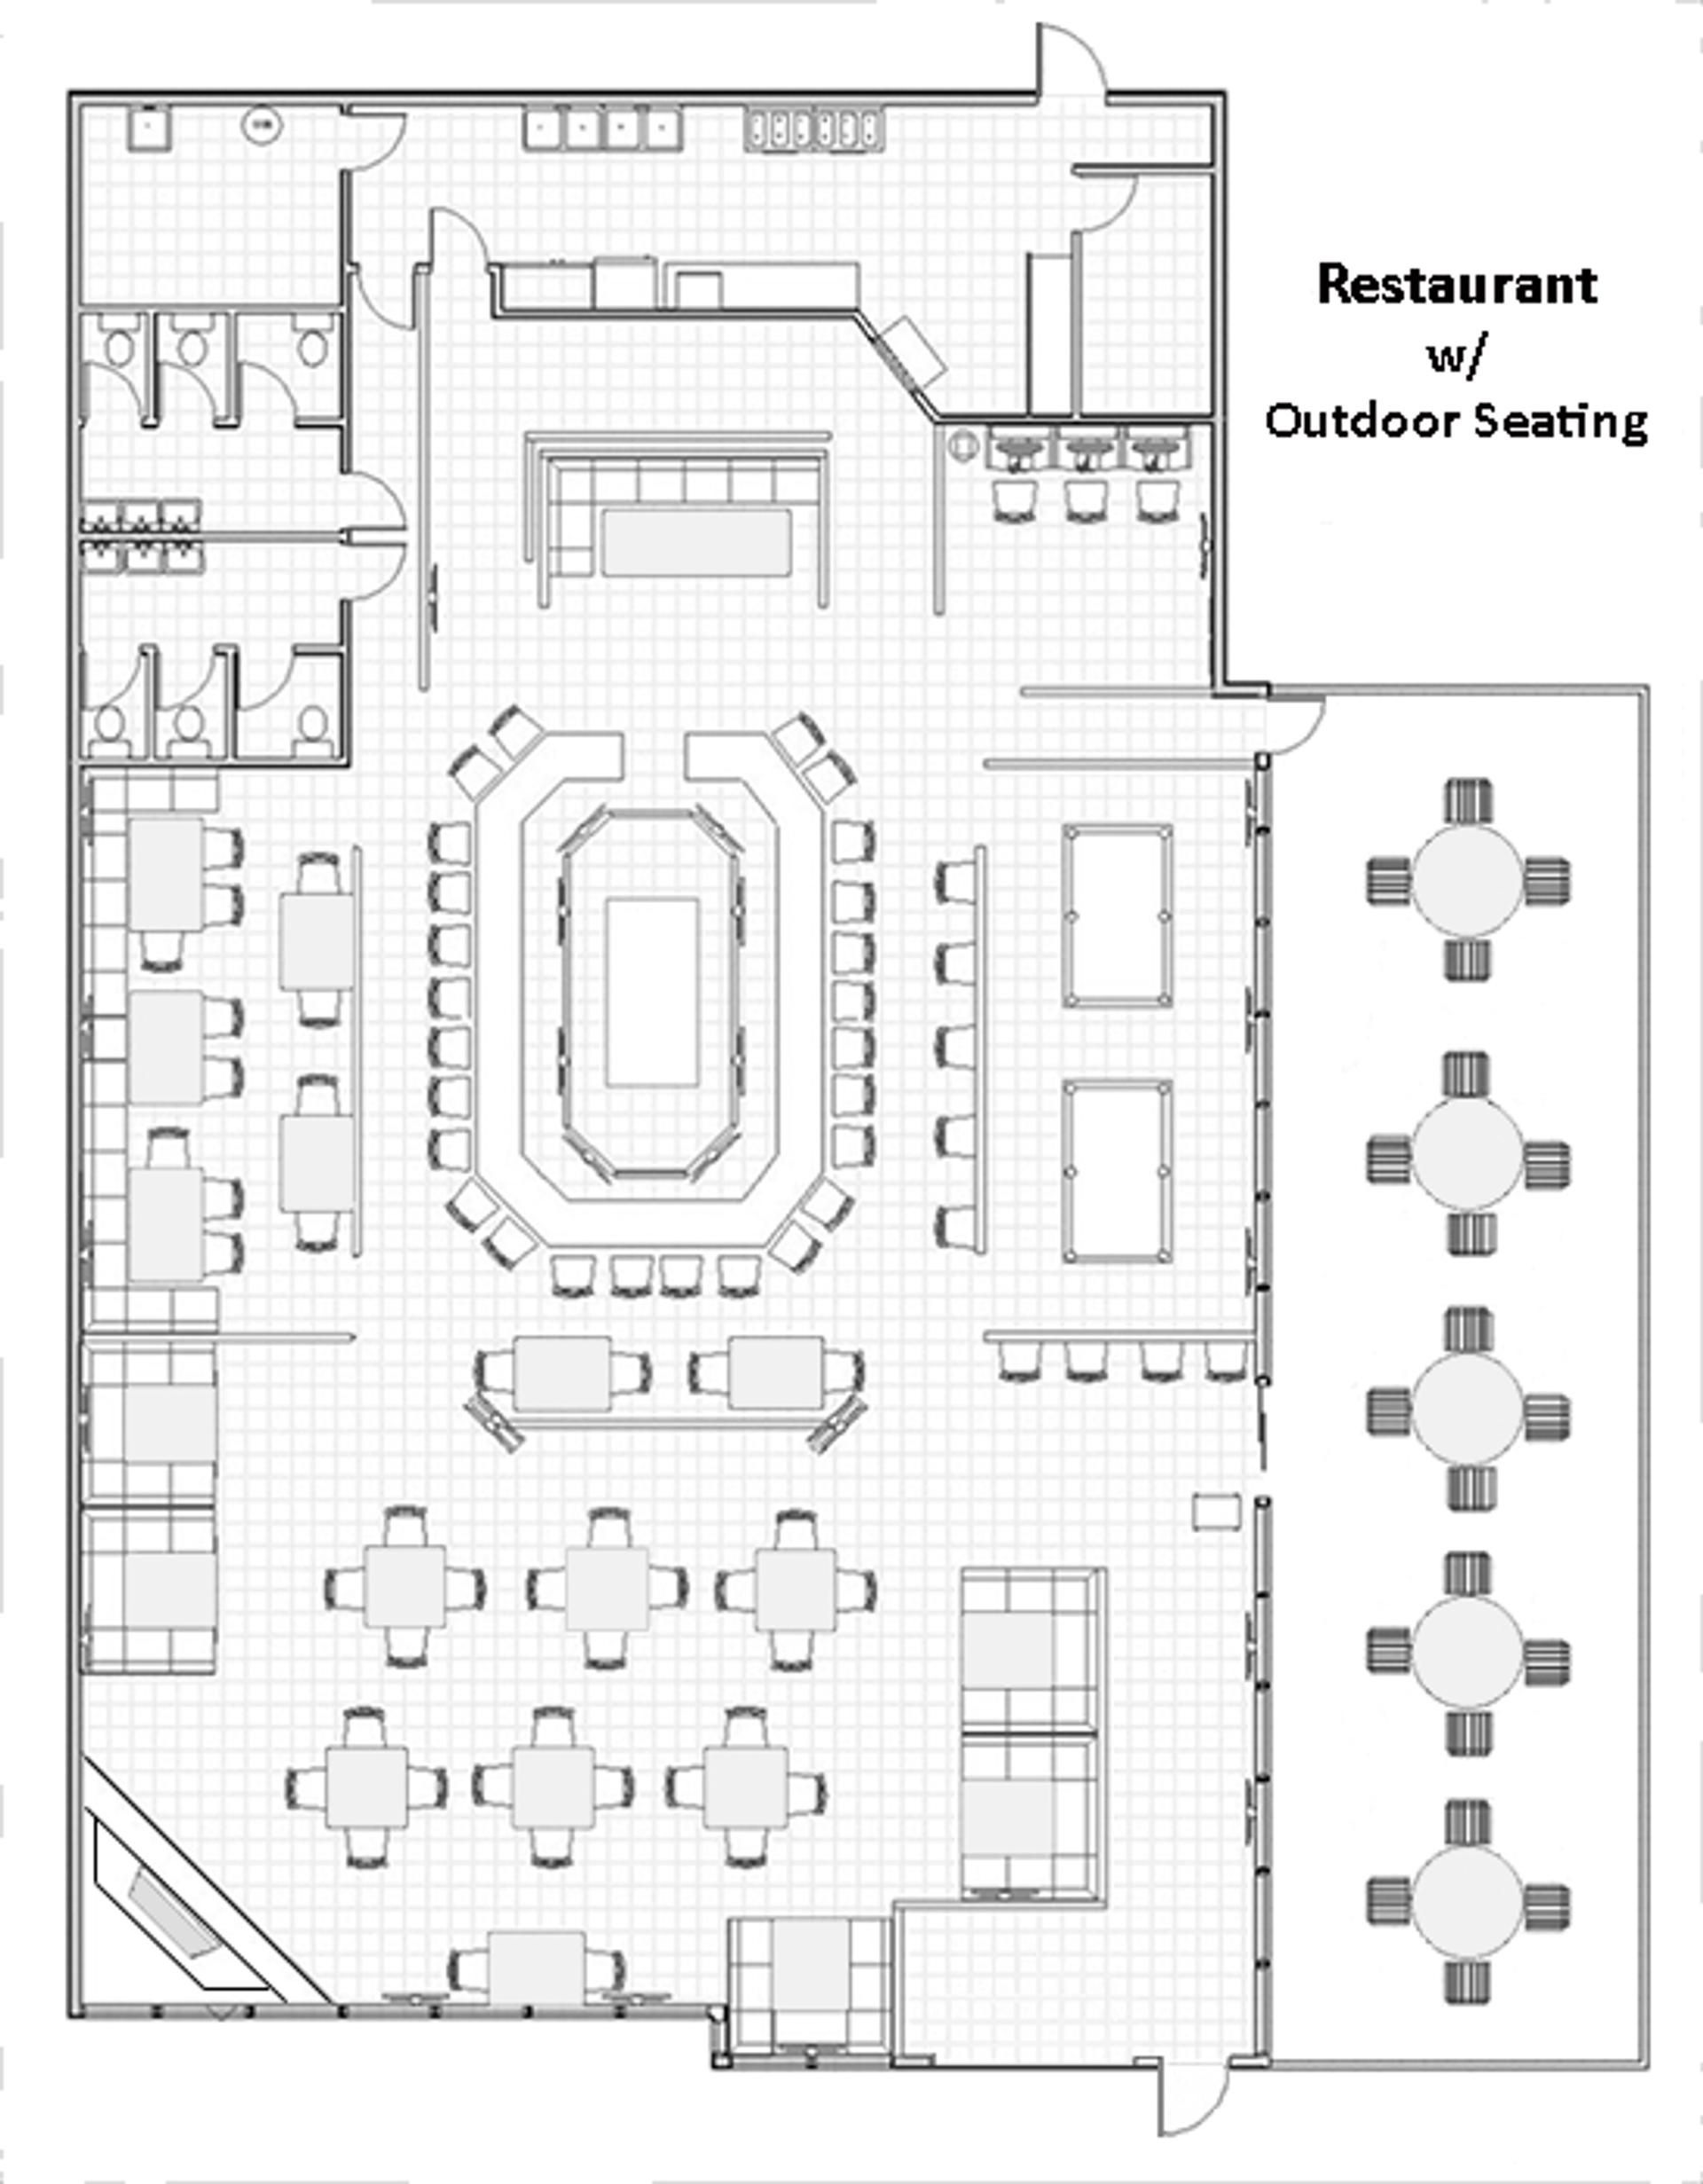 แผนผังชั้นของพื้นที่รับประทานอาหารของร้านอาหาร